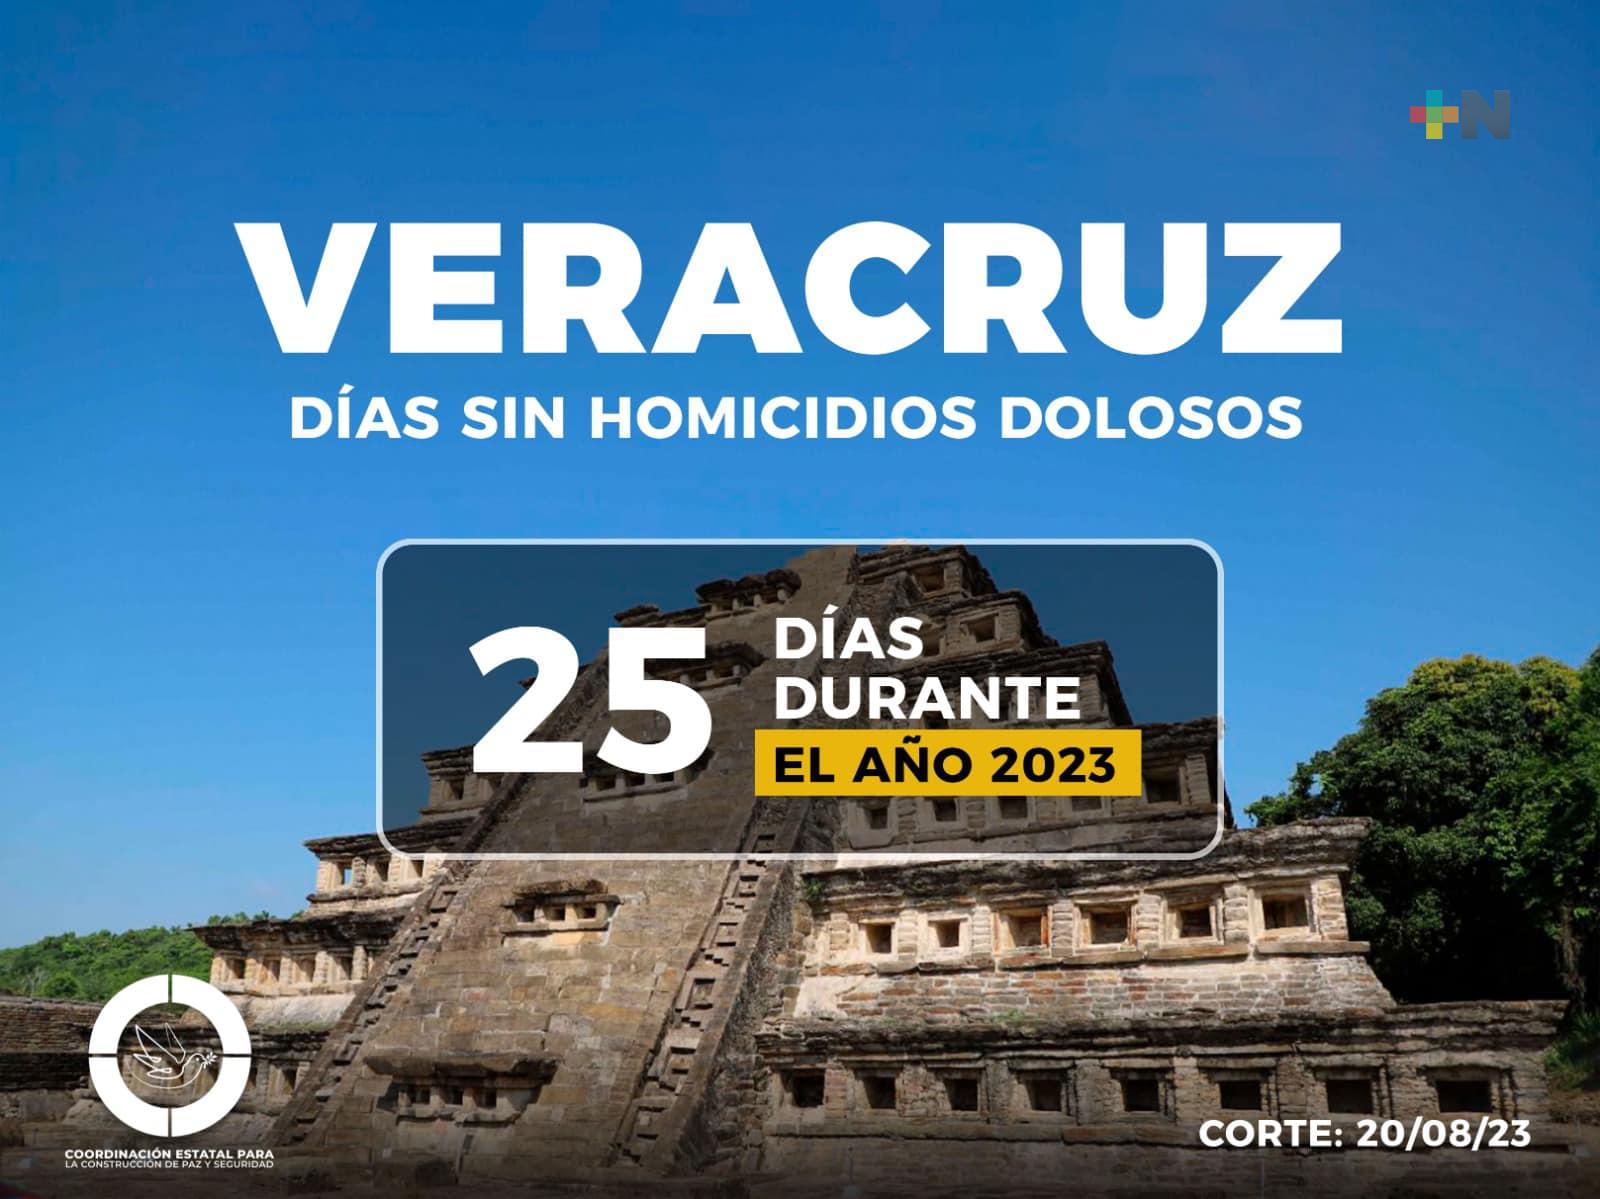 Trabajamos por tu seguridad, Veracruz suma 25 días sin homicidios dolosos: Gobernador